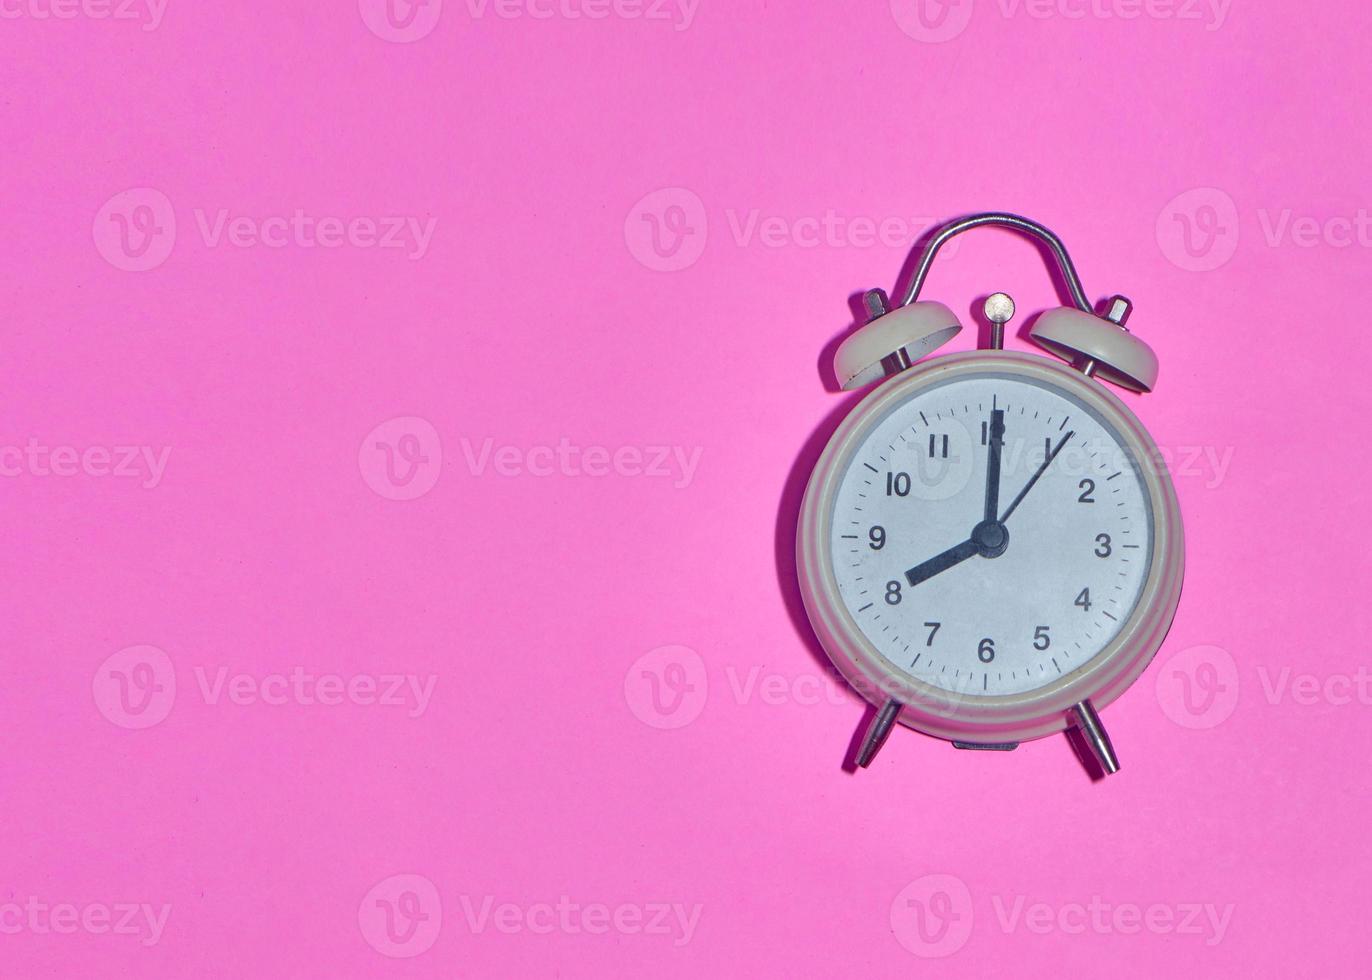 Despertador vintage sobre fondo rosa claro foto